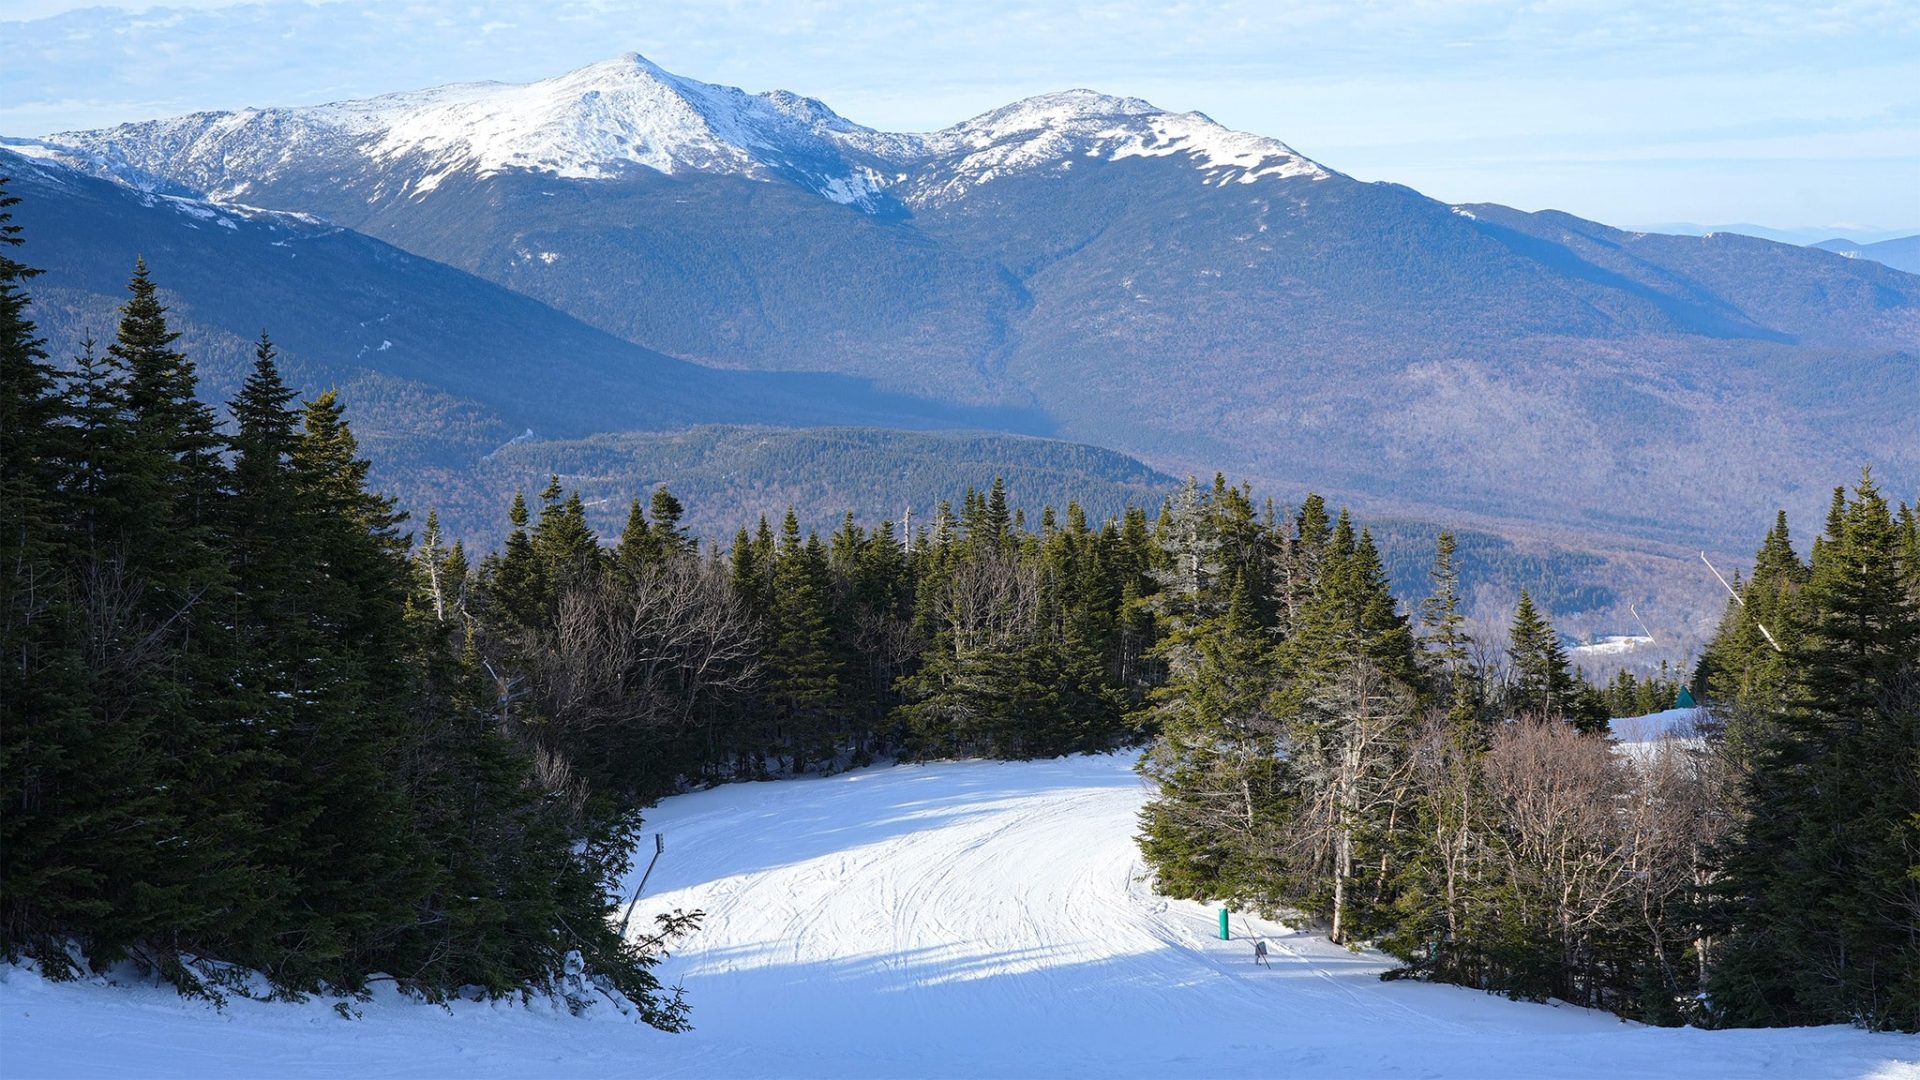 Ski area in New Hampshire